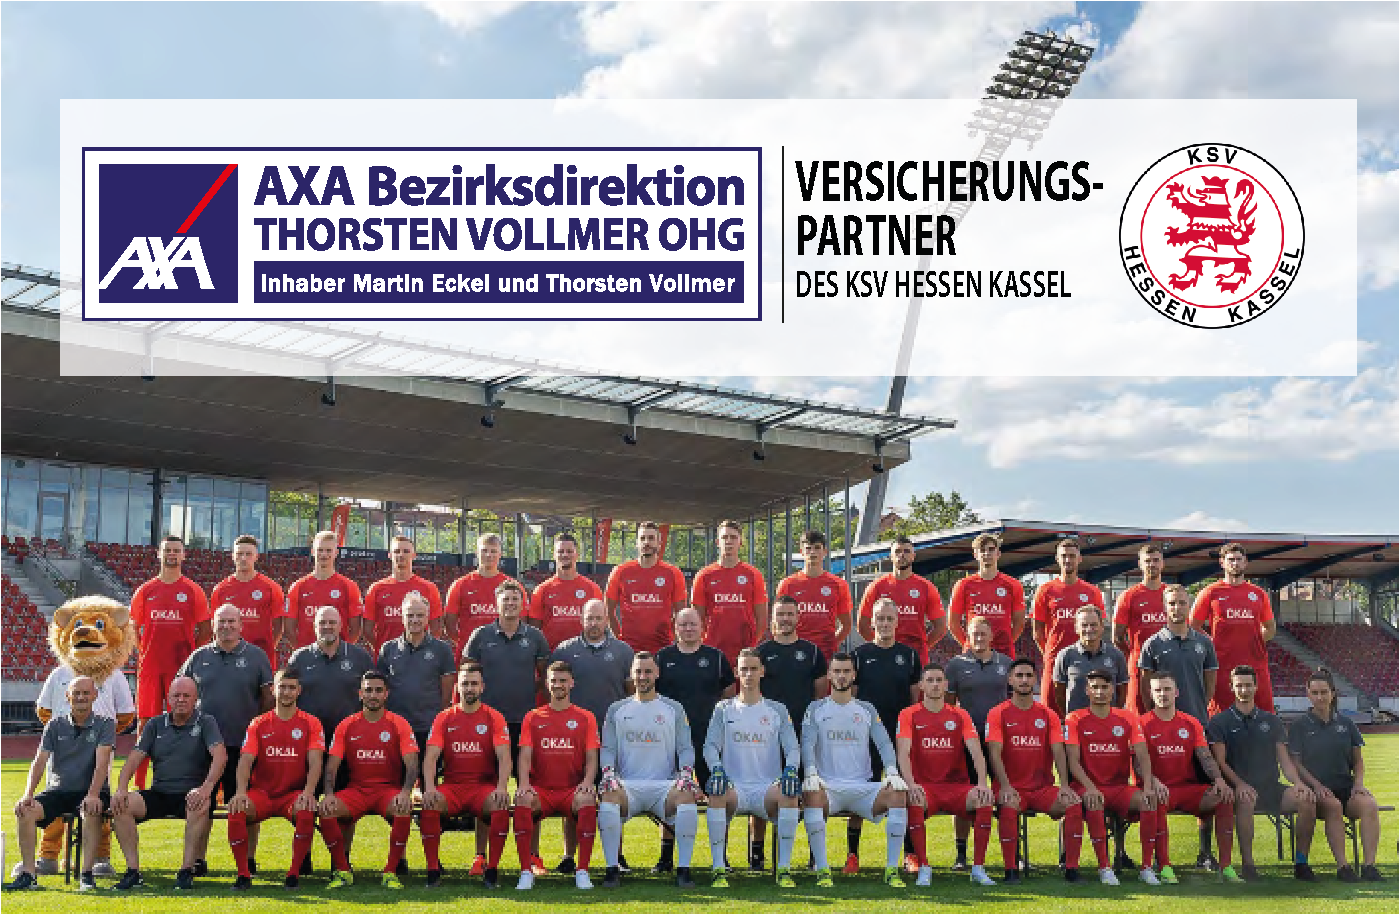 AXA Kassel Thorsten Vollmer OHG | Sponsoring KSV Hessen Kassel e.V.